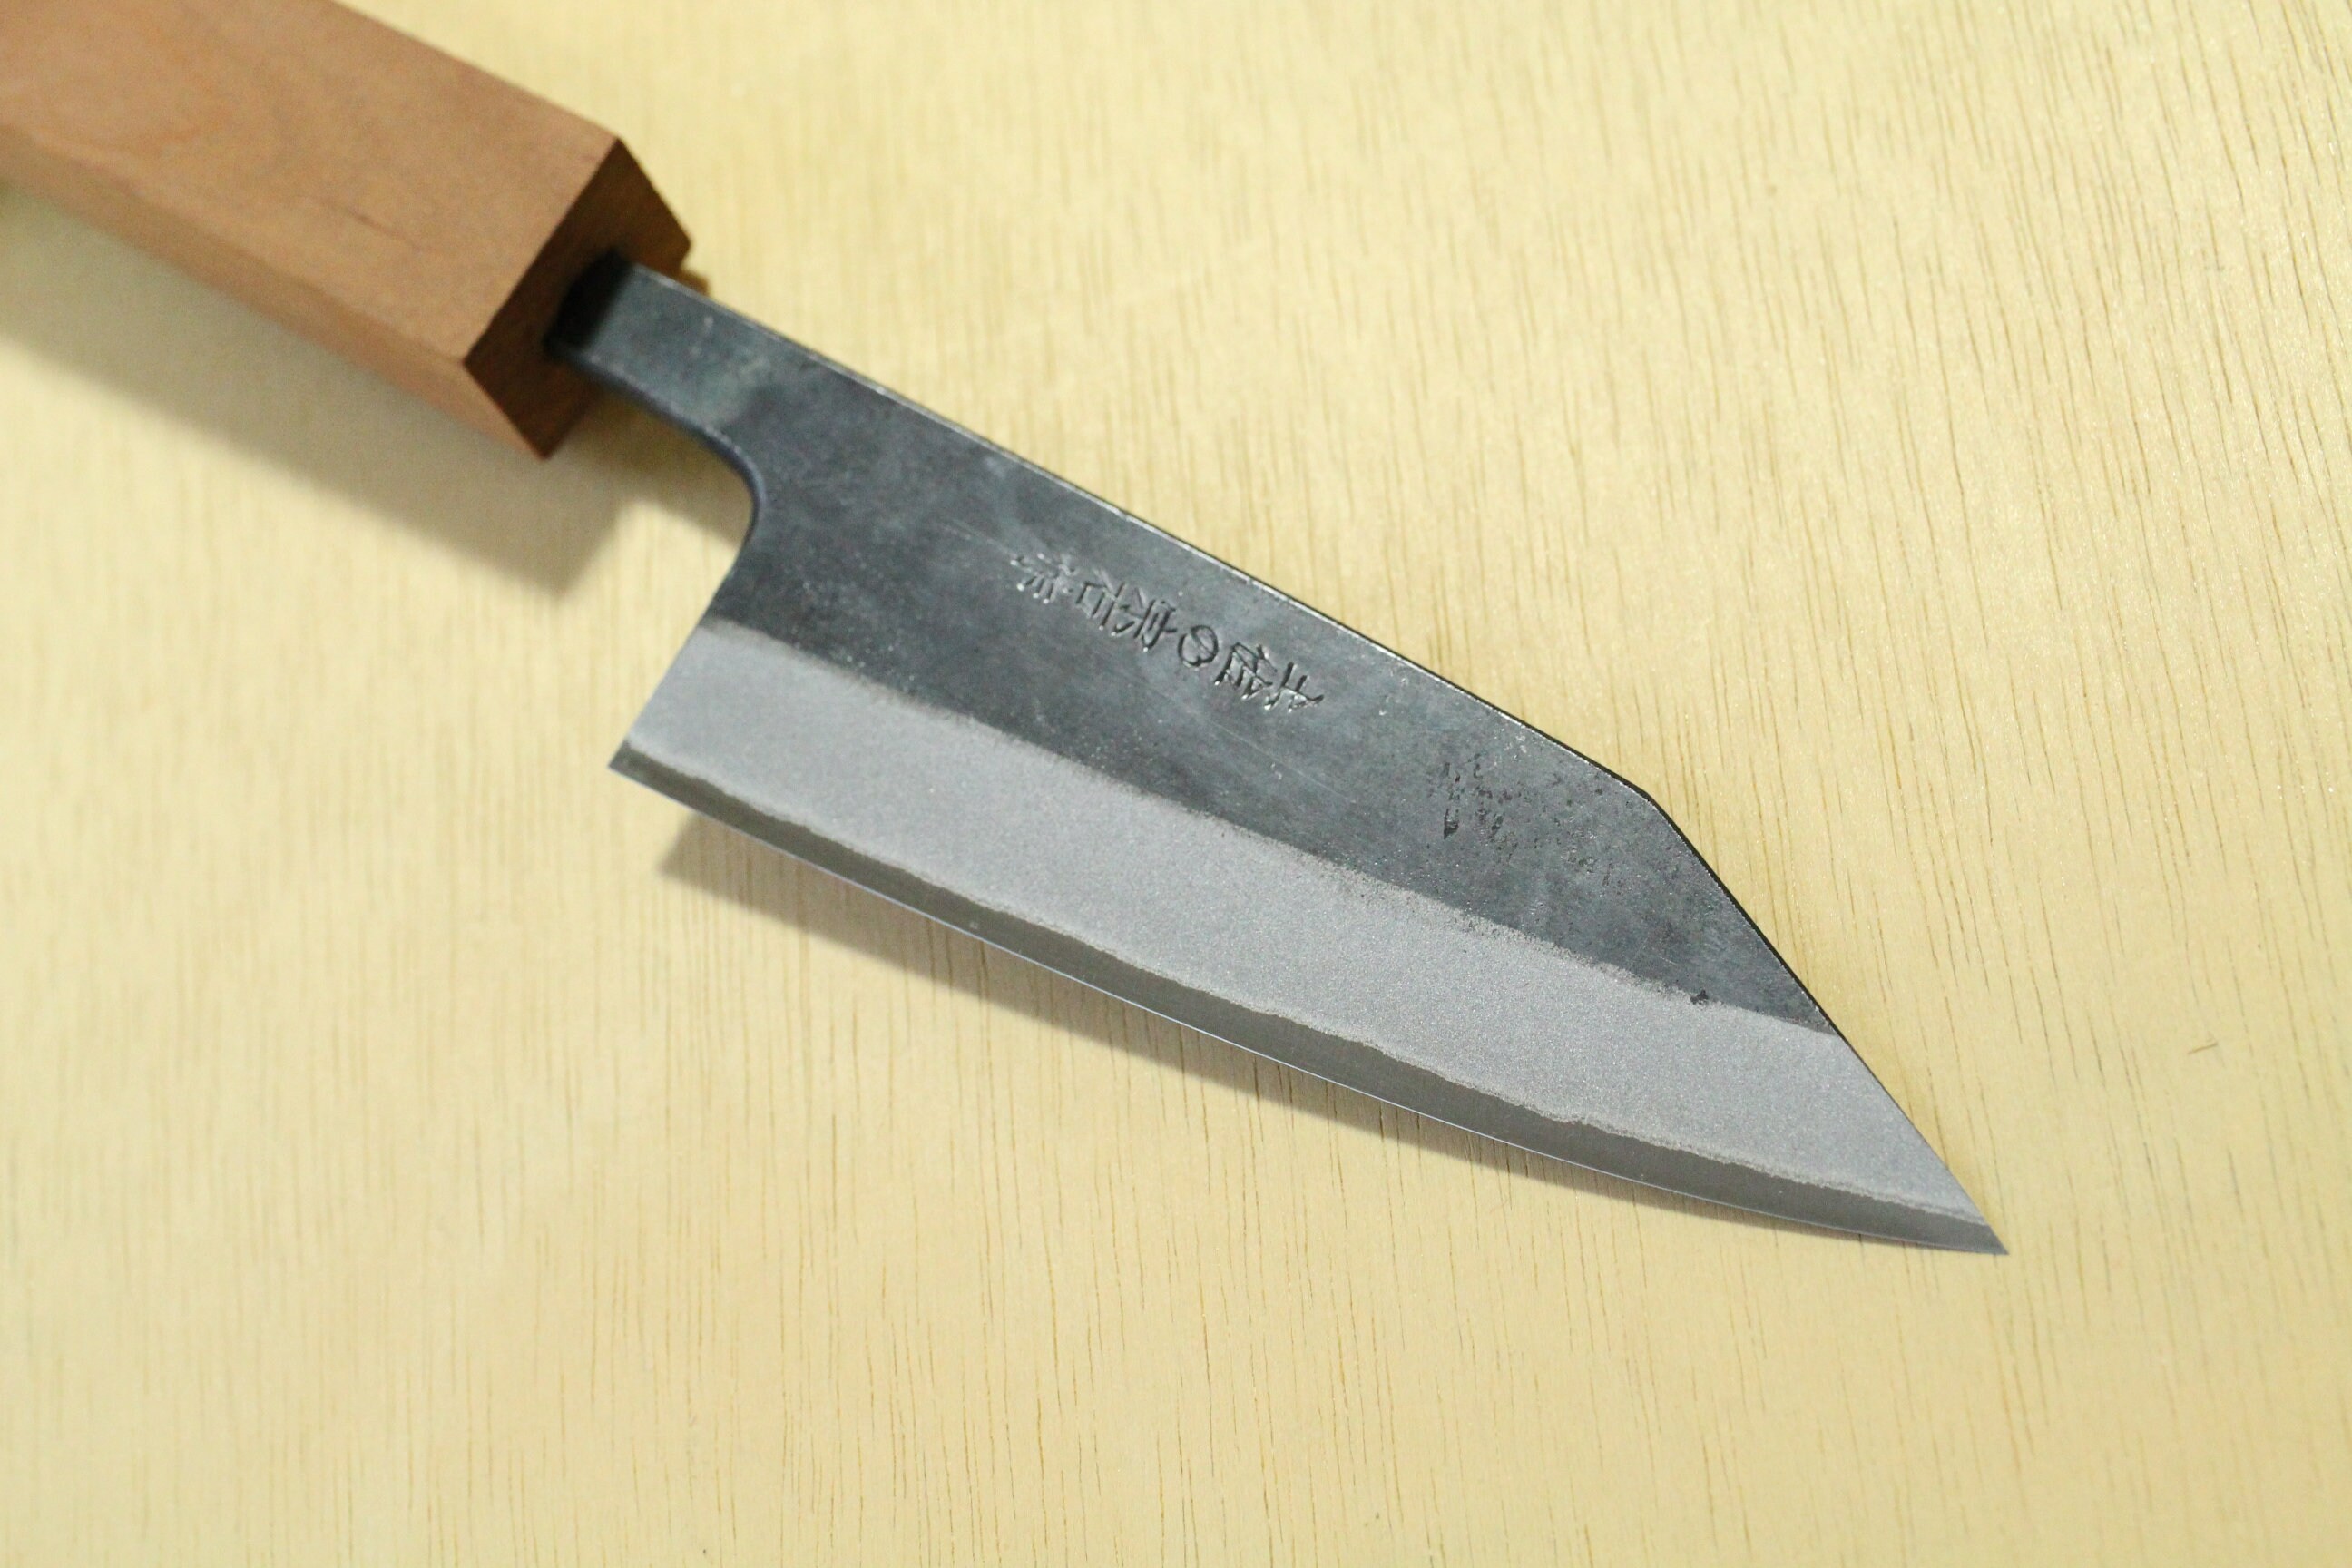 ibuki wa handle custom knife making kit for beginners Blue #2 steel Na –  ibuki blade blanks